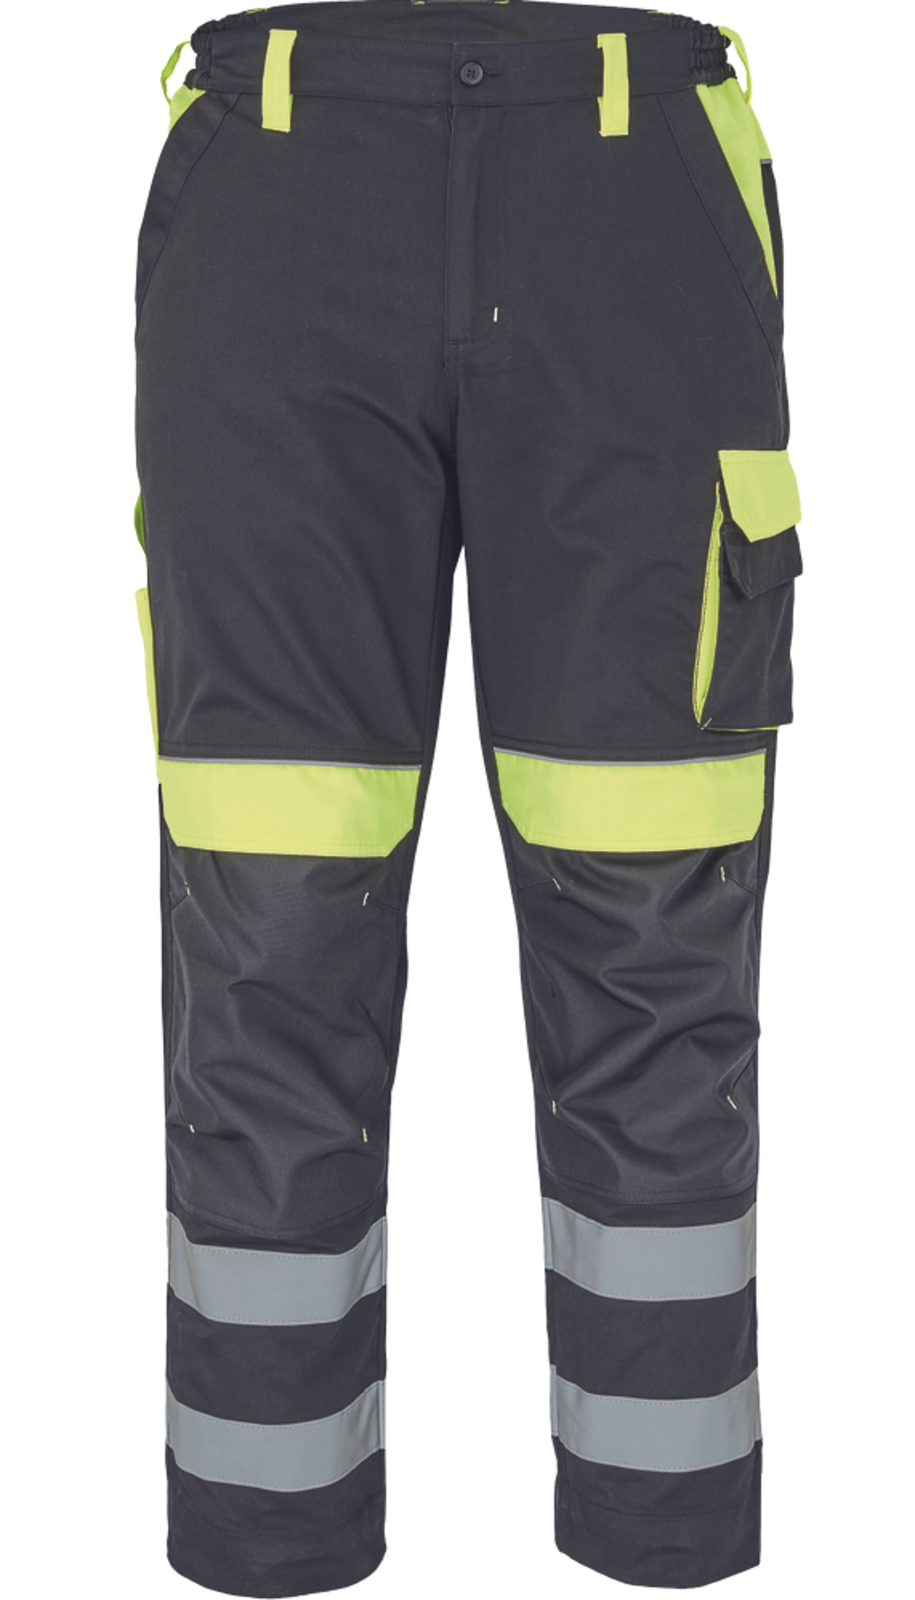 Pracovné nohavice s reflexnými pruhmi Cerva Max Vivo Reflex  - veľkosť: 52, farba: čierna/žltá